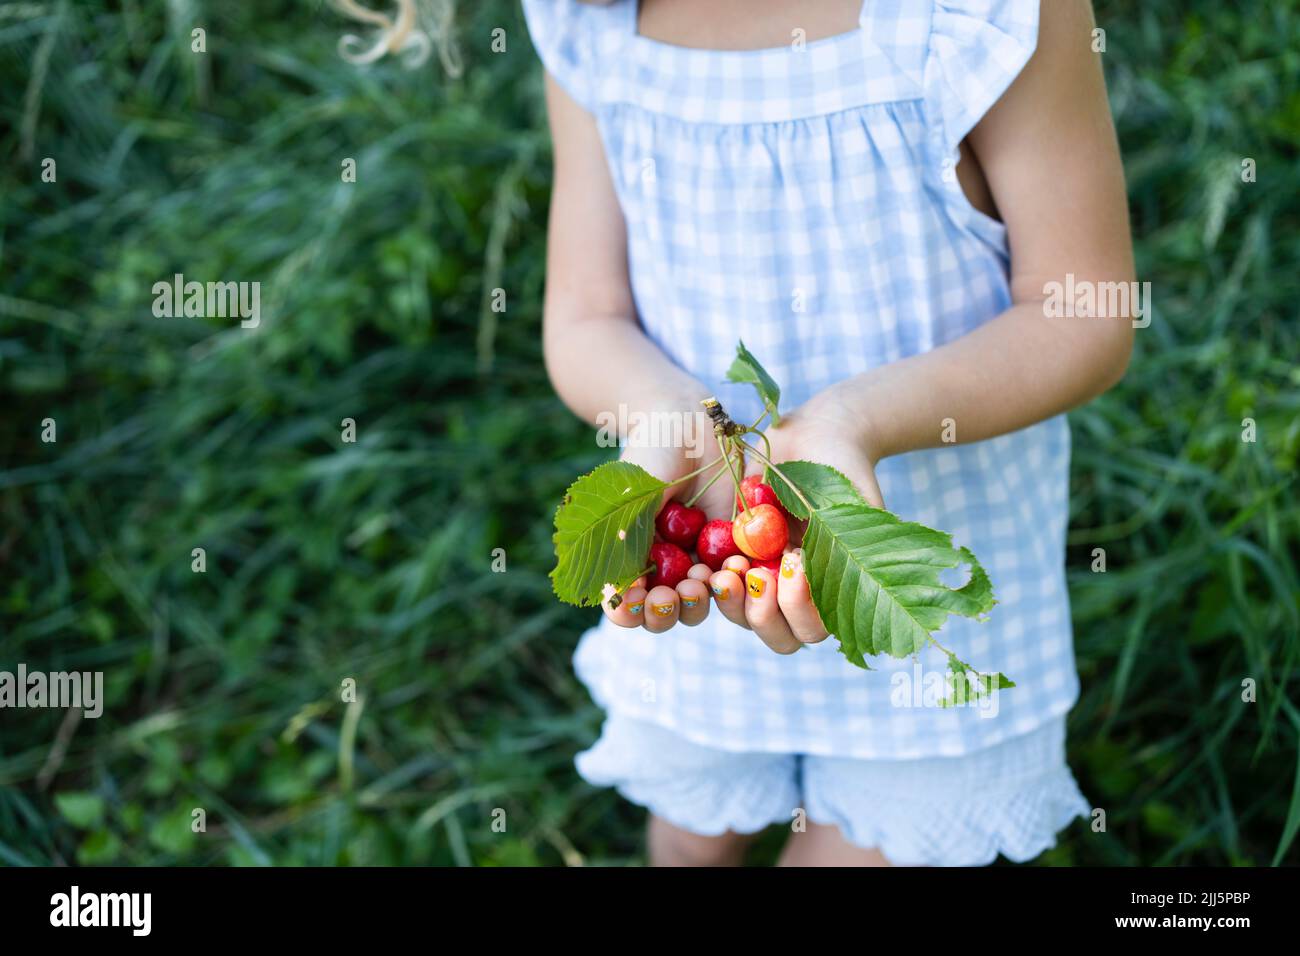 Chica con las manos ahuecada sosteniendo cerezas frescas Foto de stock